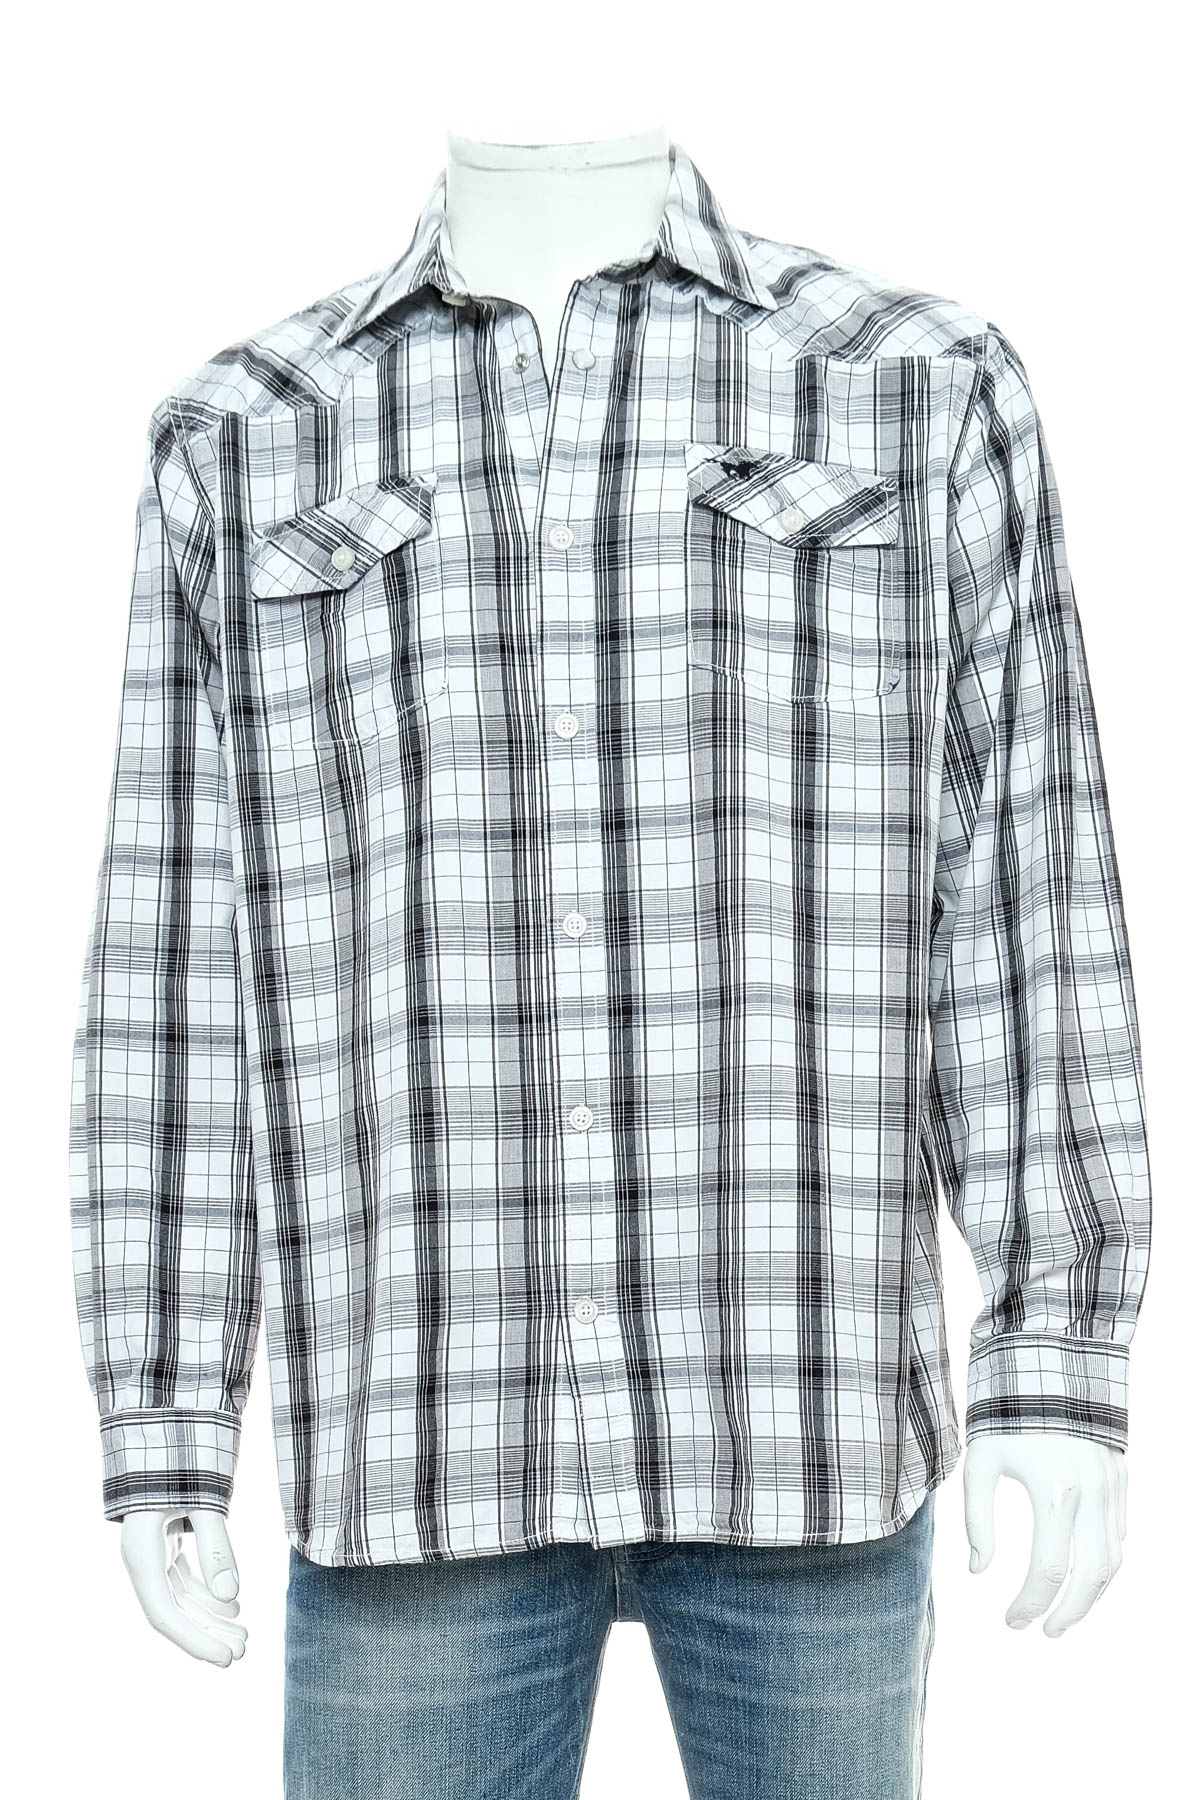 Ανδρικό πουκάμισο - O.N. TANTUM - 0